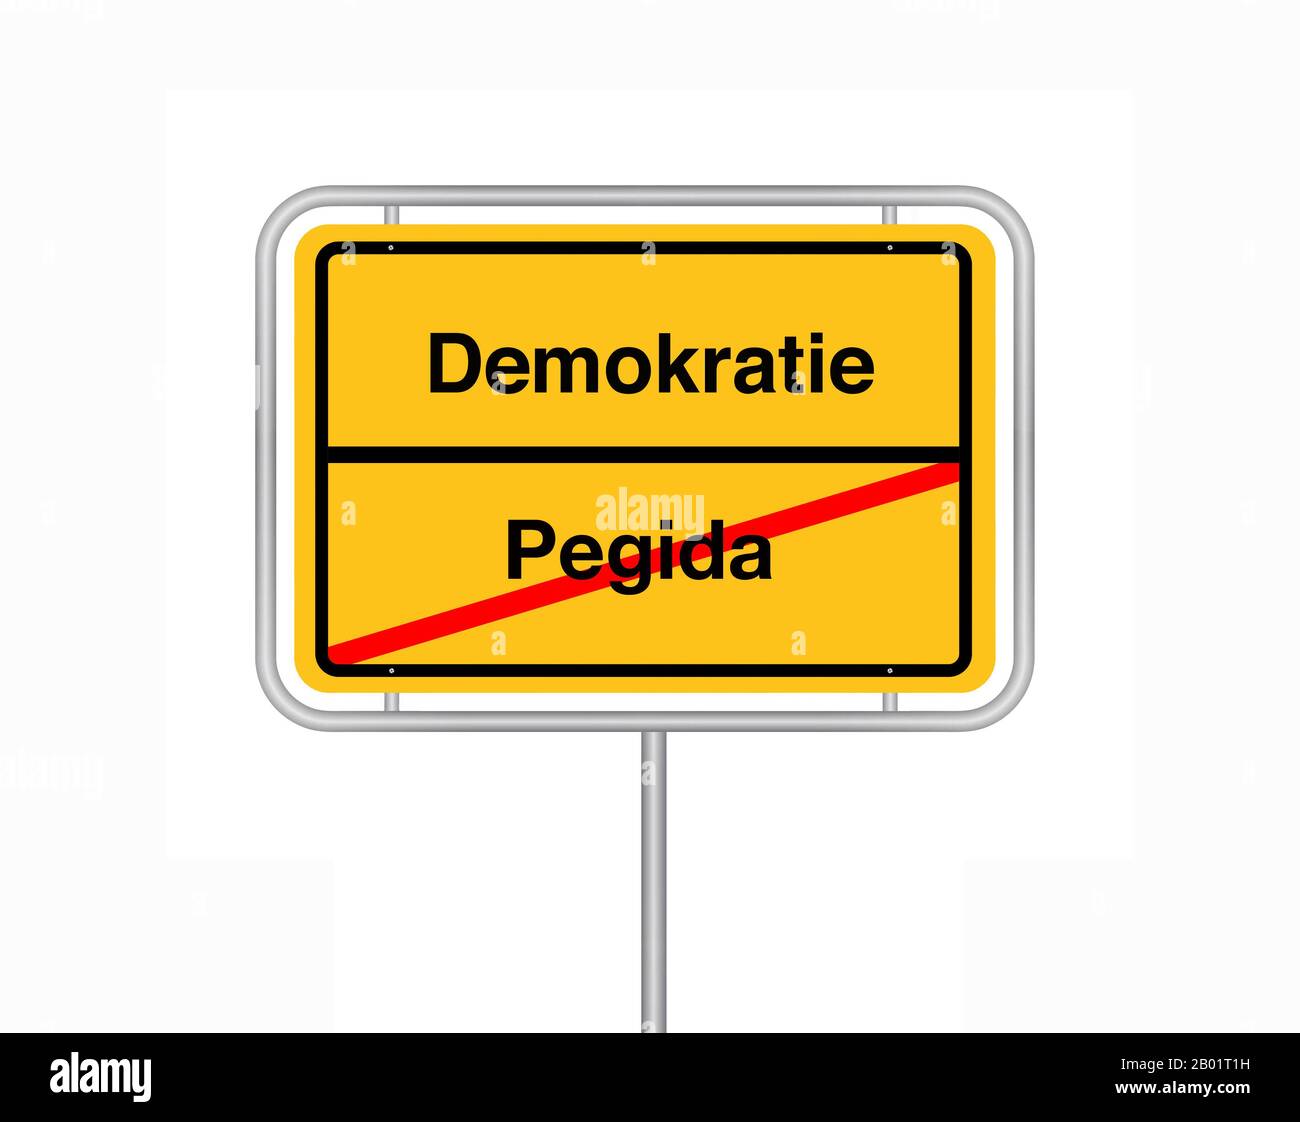 Stadtgrenzenschild Pegida - Demokratin, Pegida - Demokratie, Deutschland Stockfoto